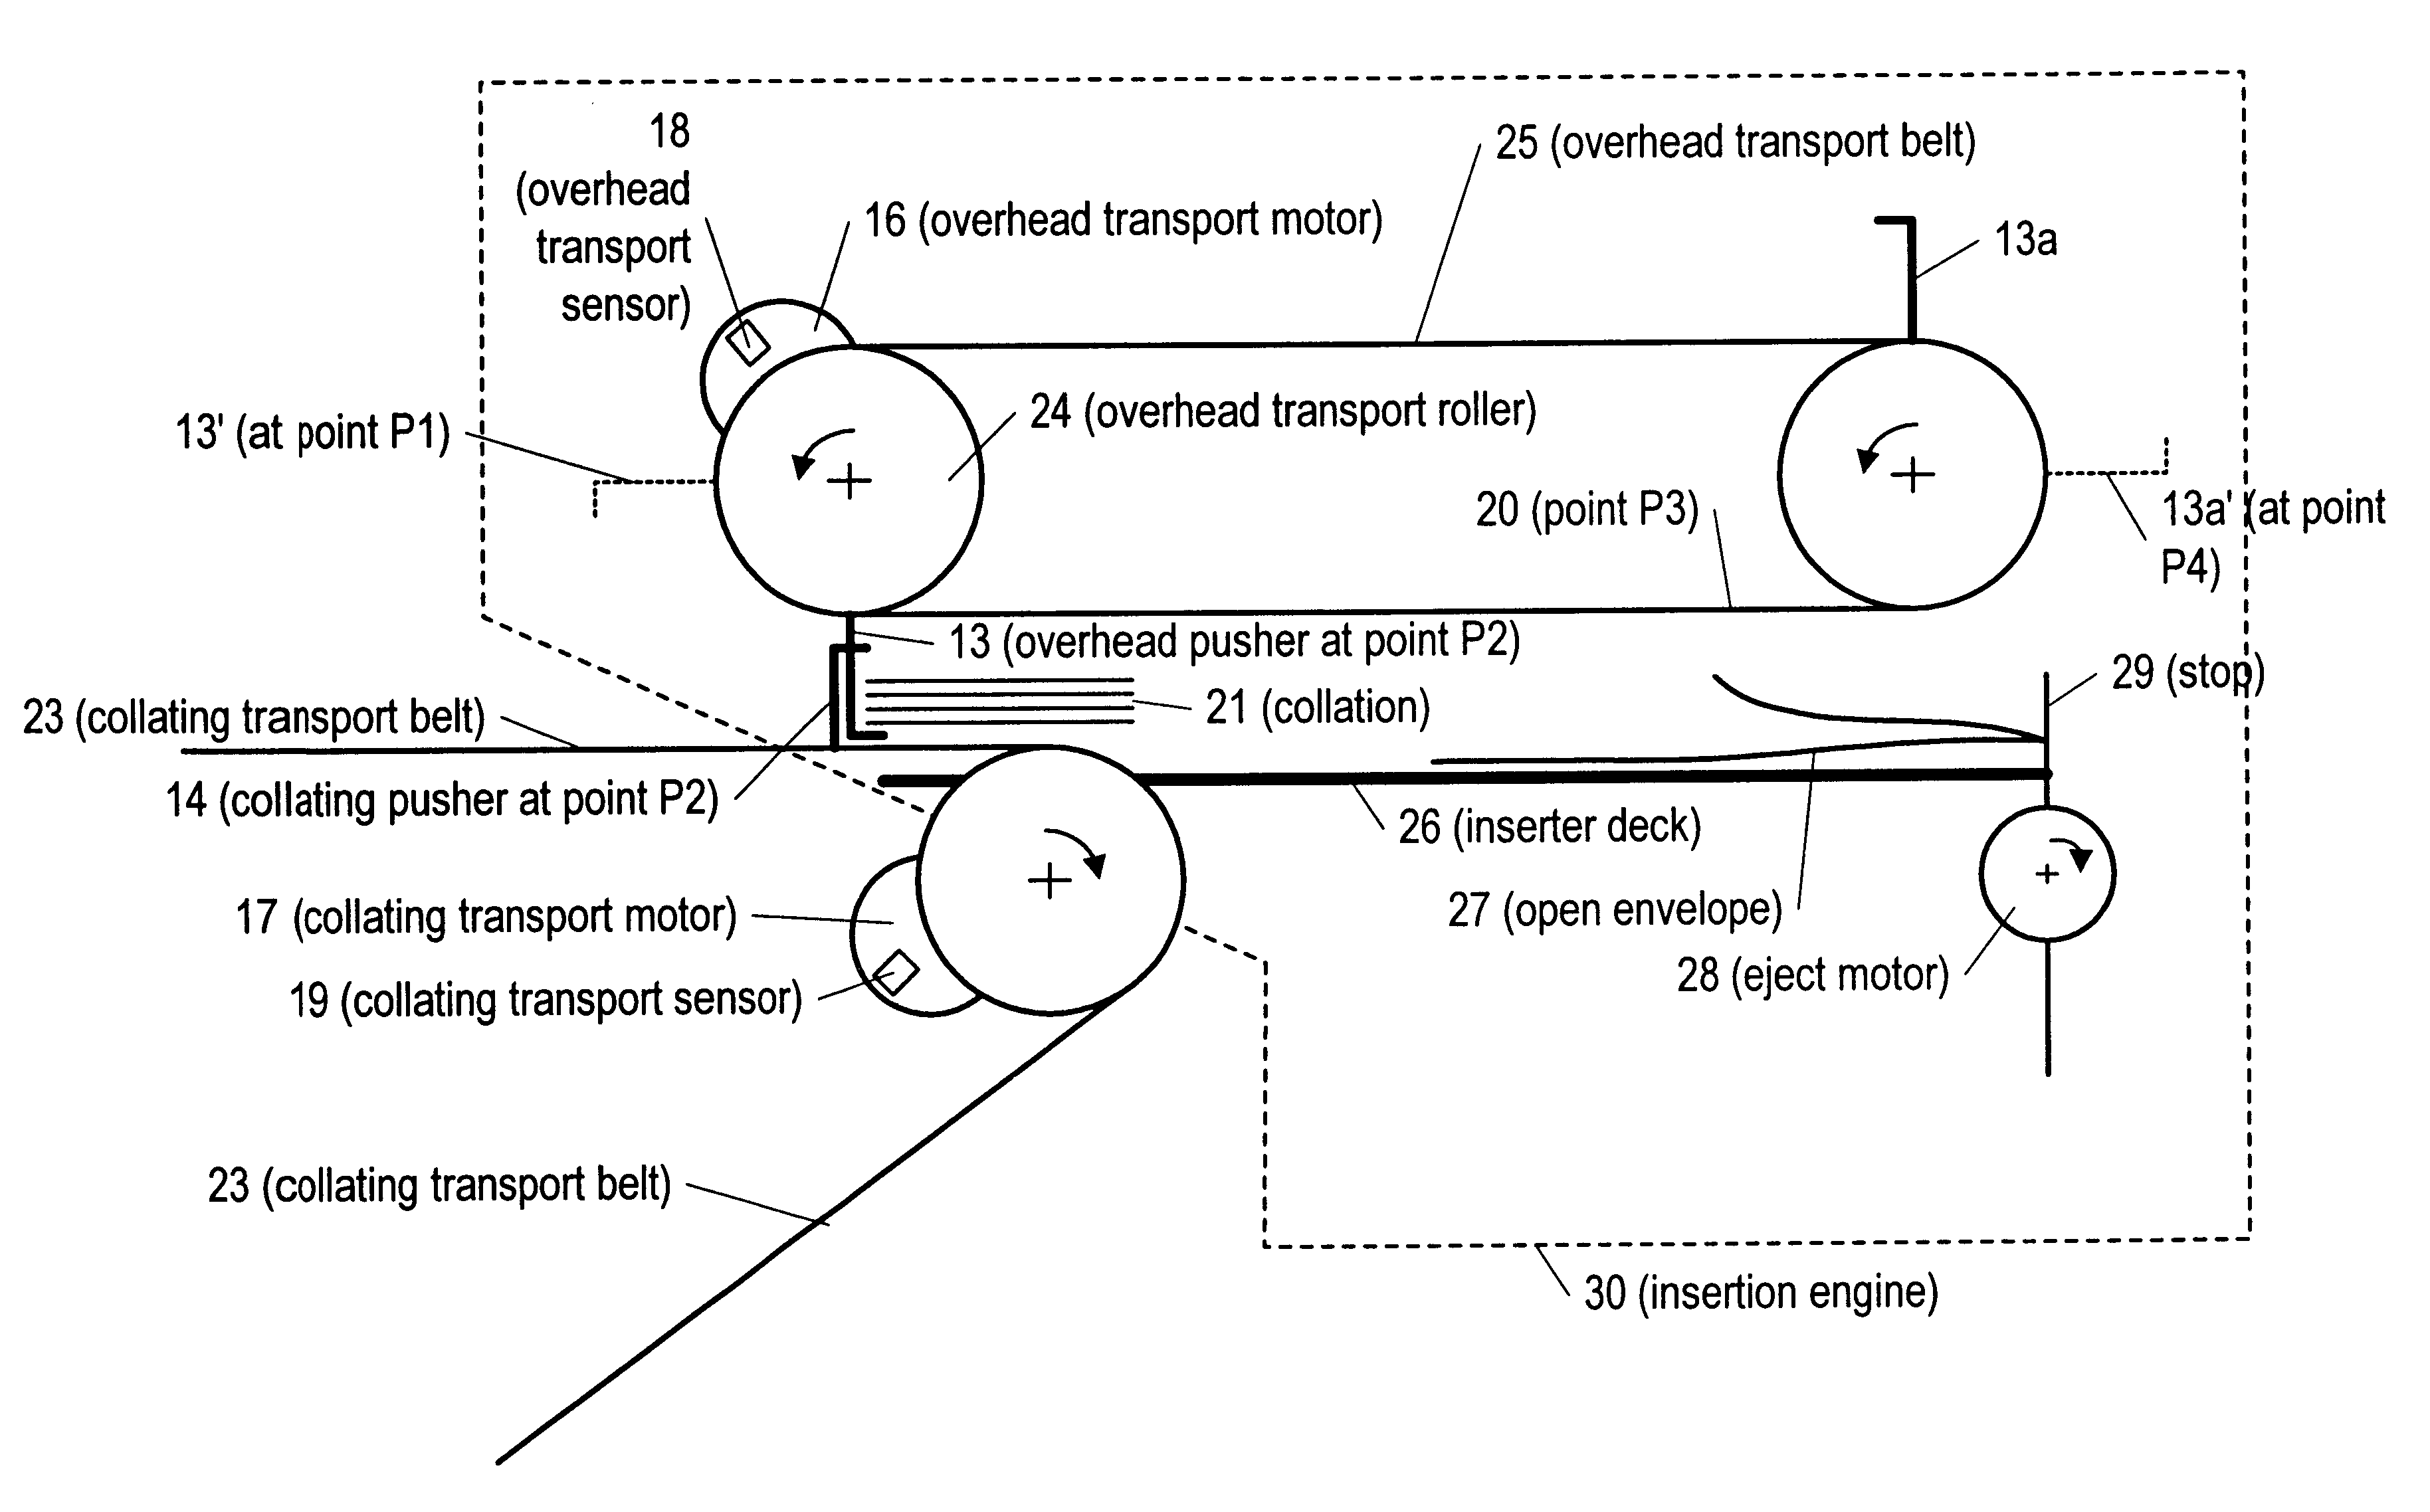 Method for synchronizing an envelope inserter